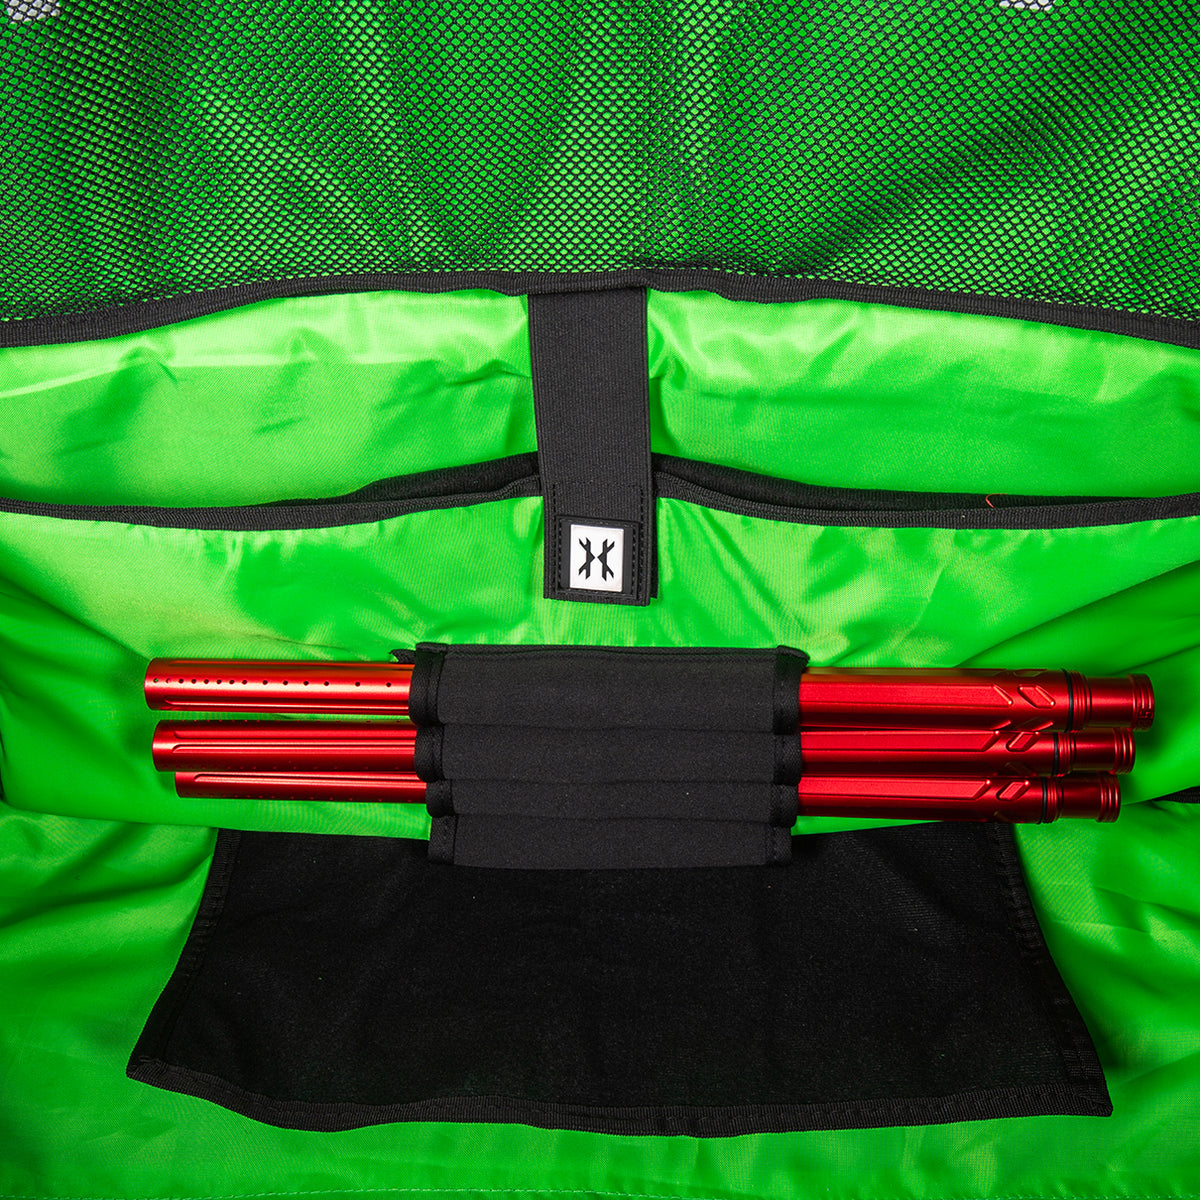 Expand Roller Bag Black/Green